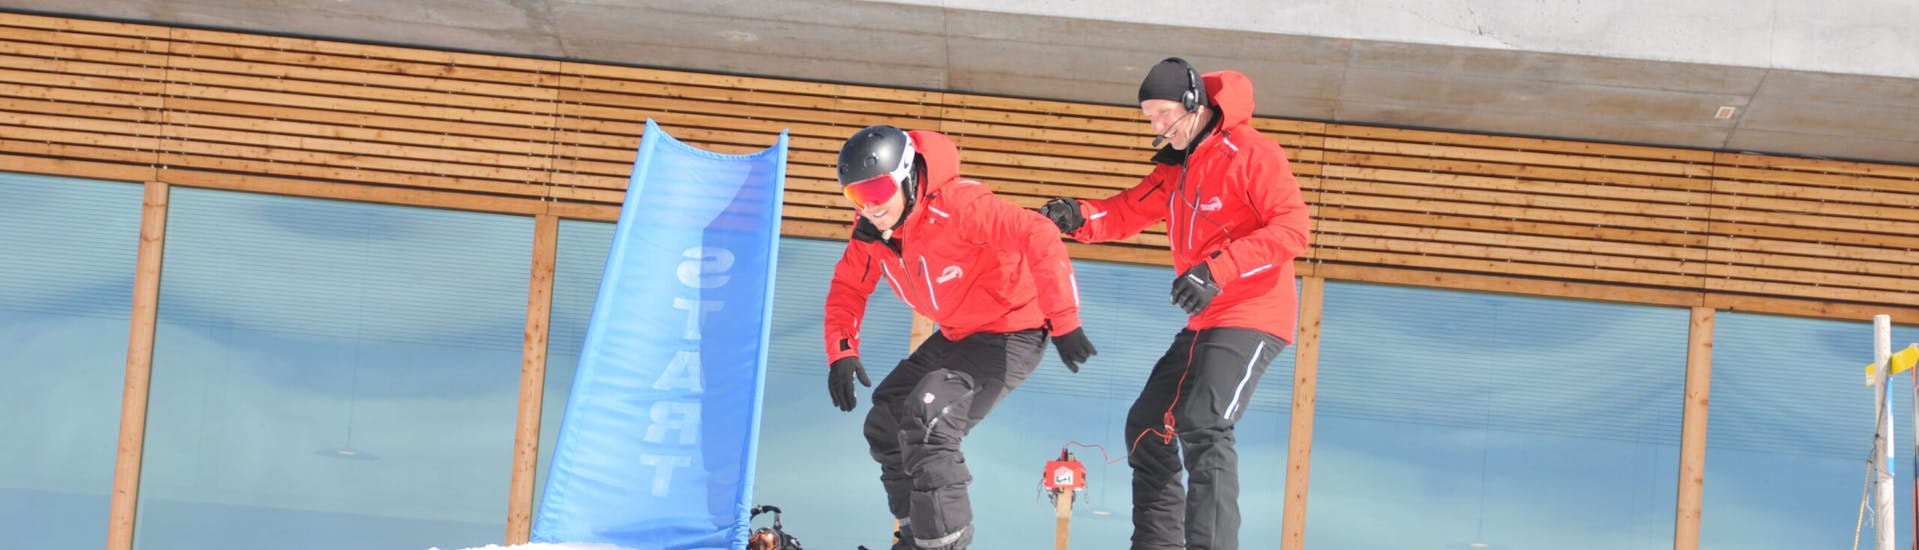 Lezioni private di Snowboard per tutti i livelli con Ski- & Snowboardschule Innsbruck.